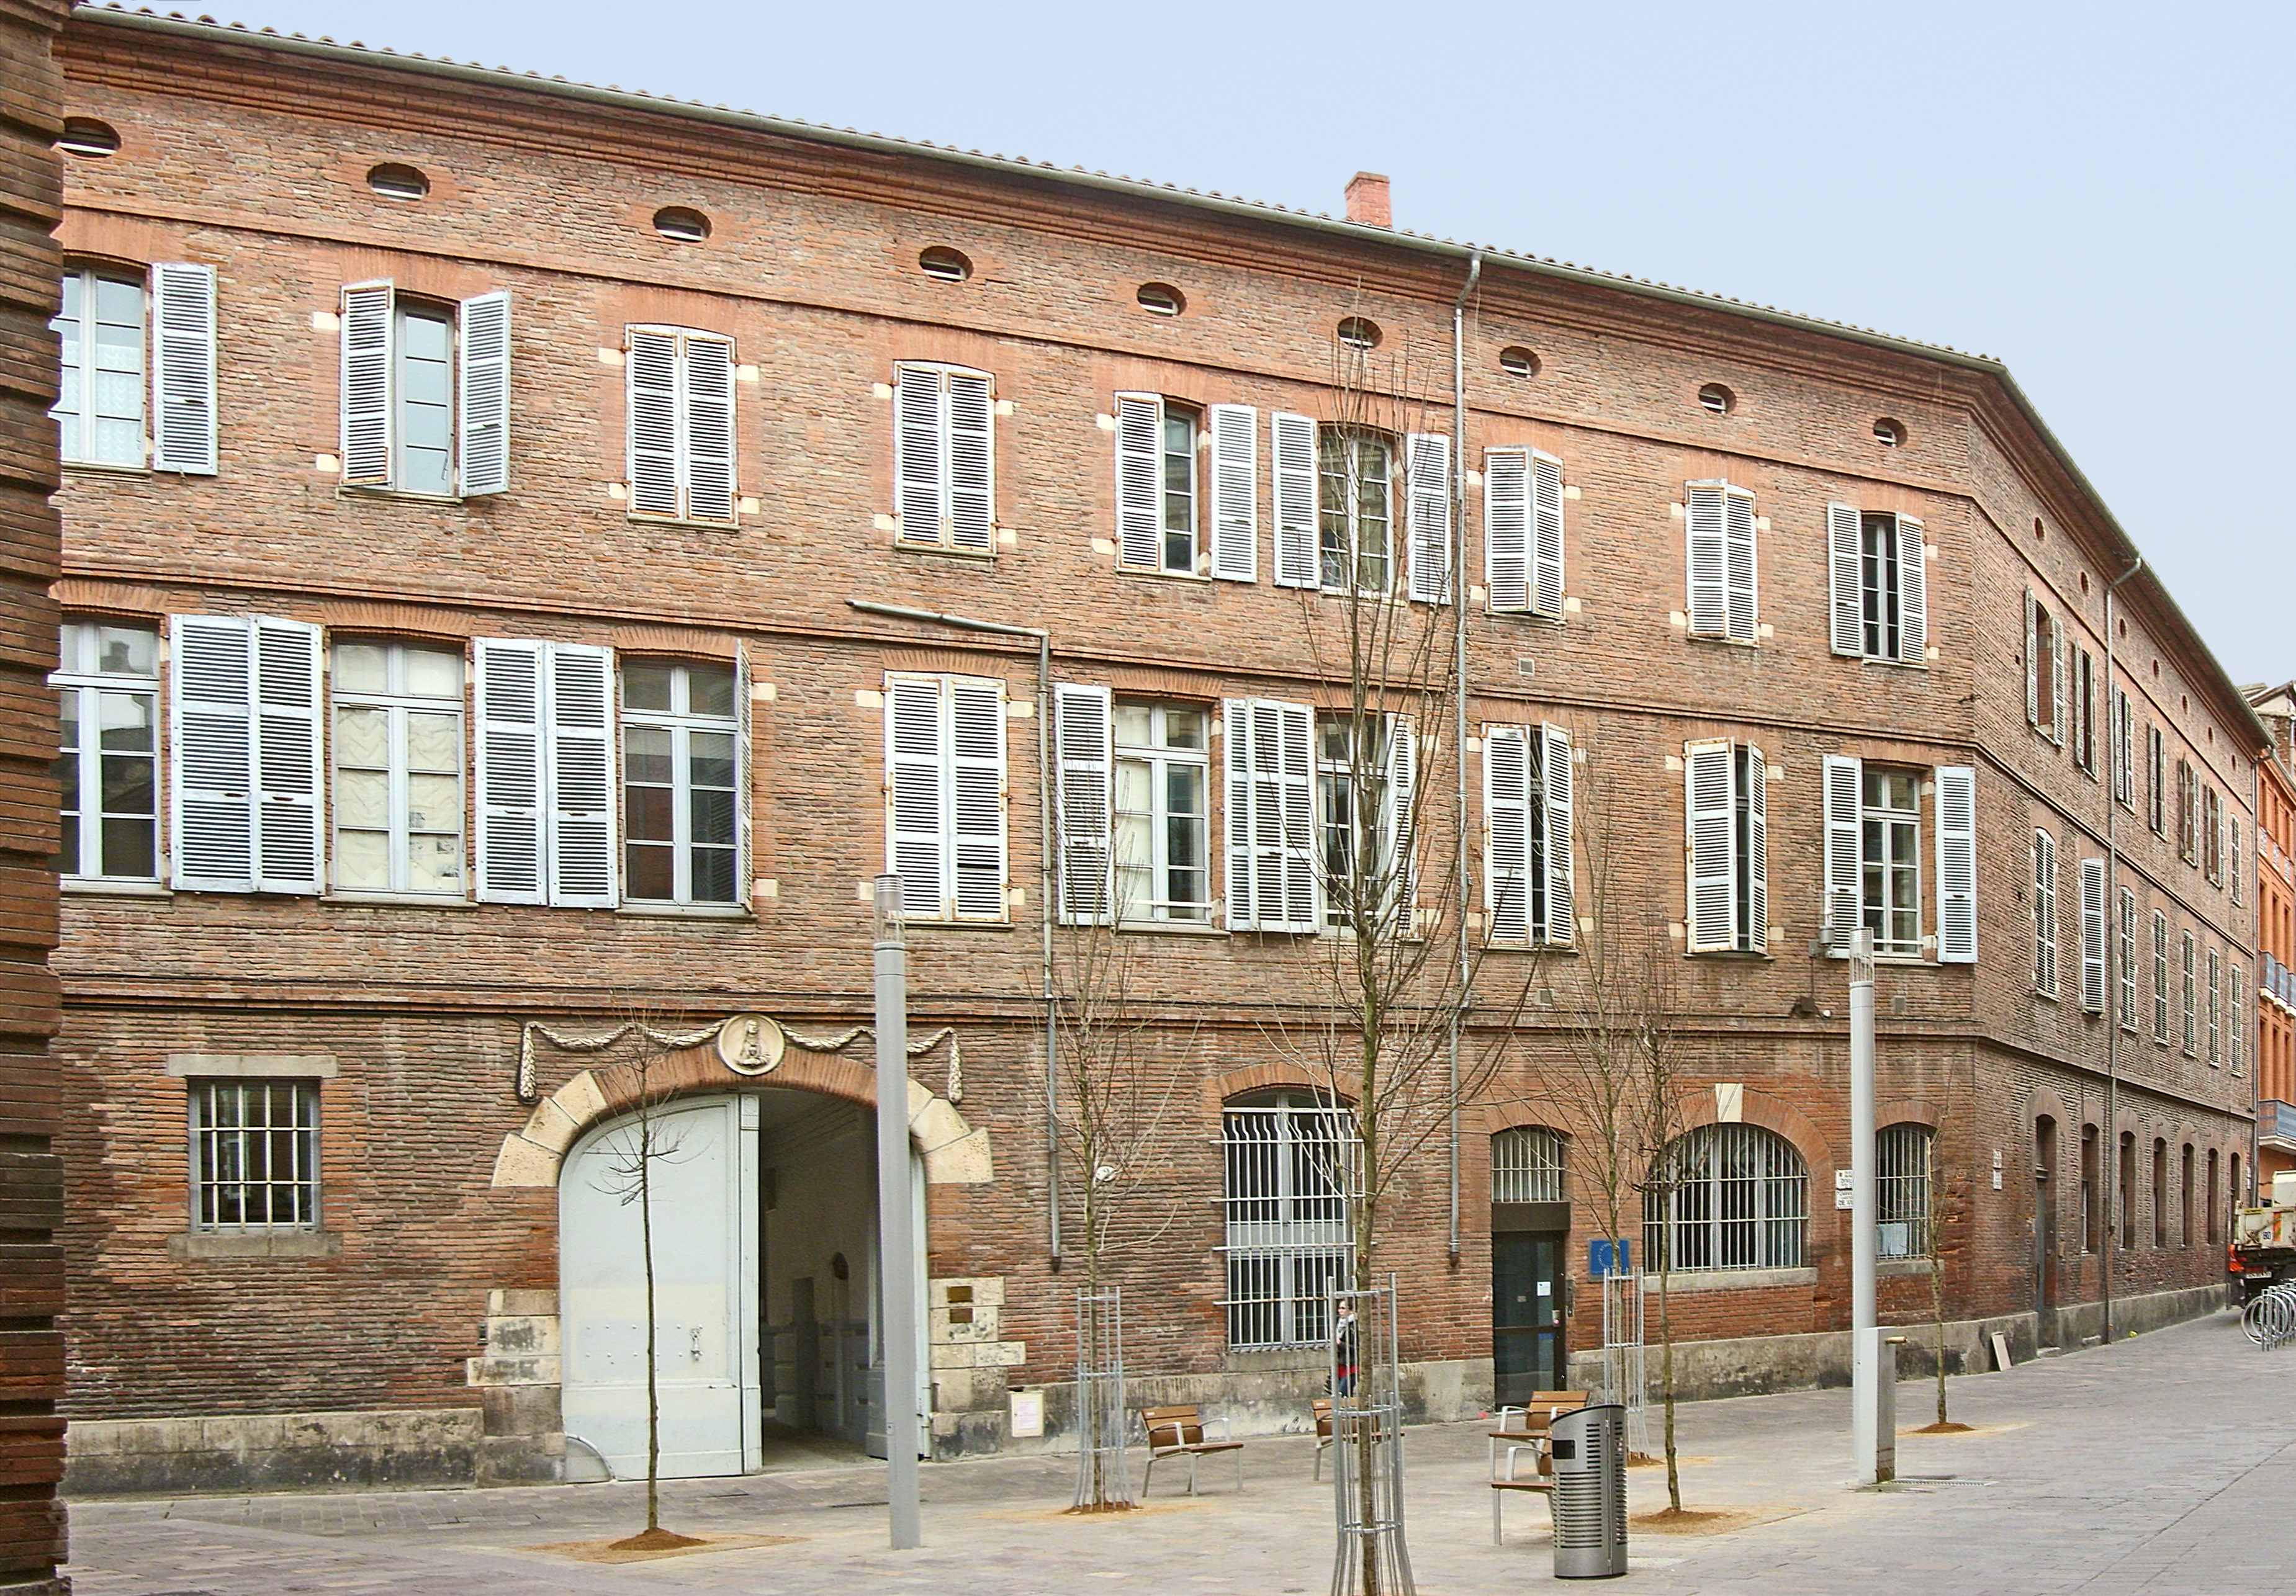 Collège de Foix (Toulouse). Façade et porche d'entrée. © Didier Descouens